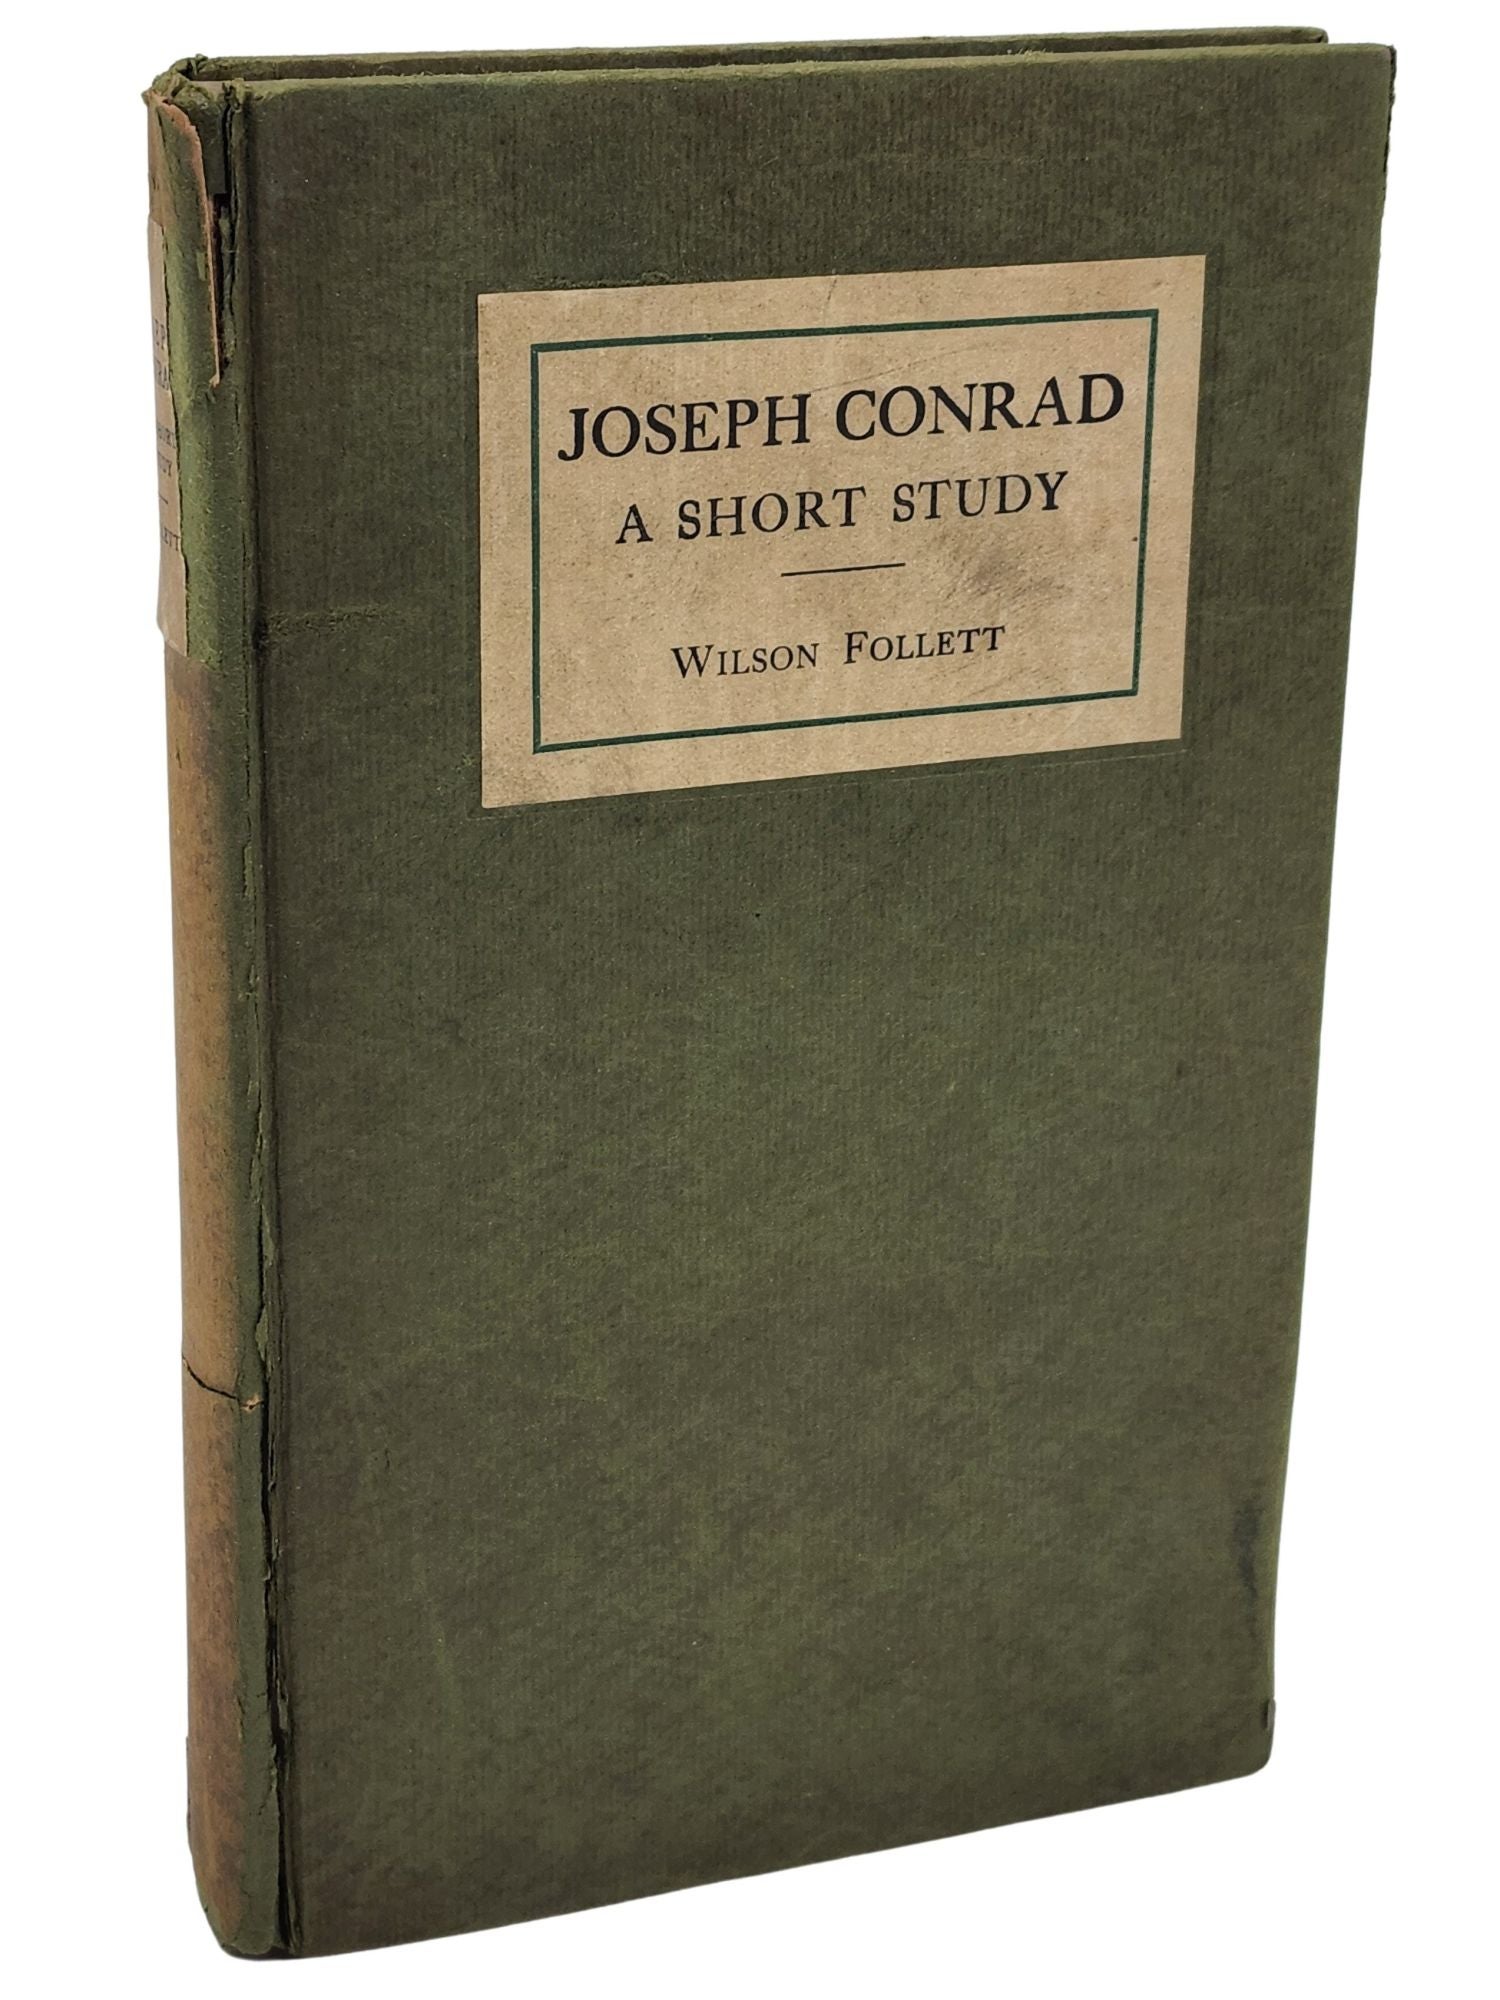 [Book #50771] JOSEPH CONRAD. Joseph Conrad, Wilson Follett.